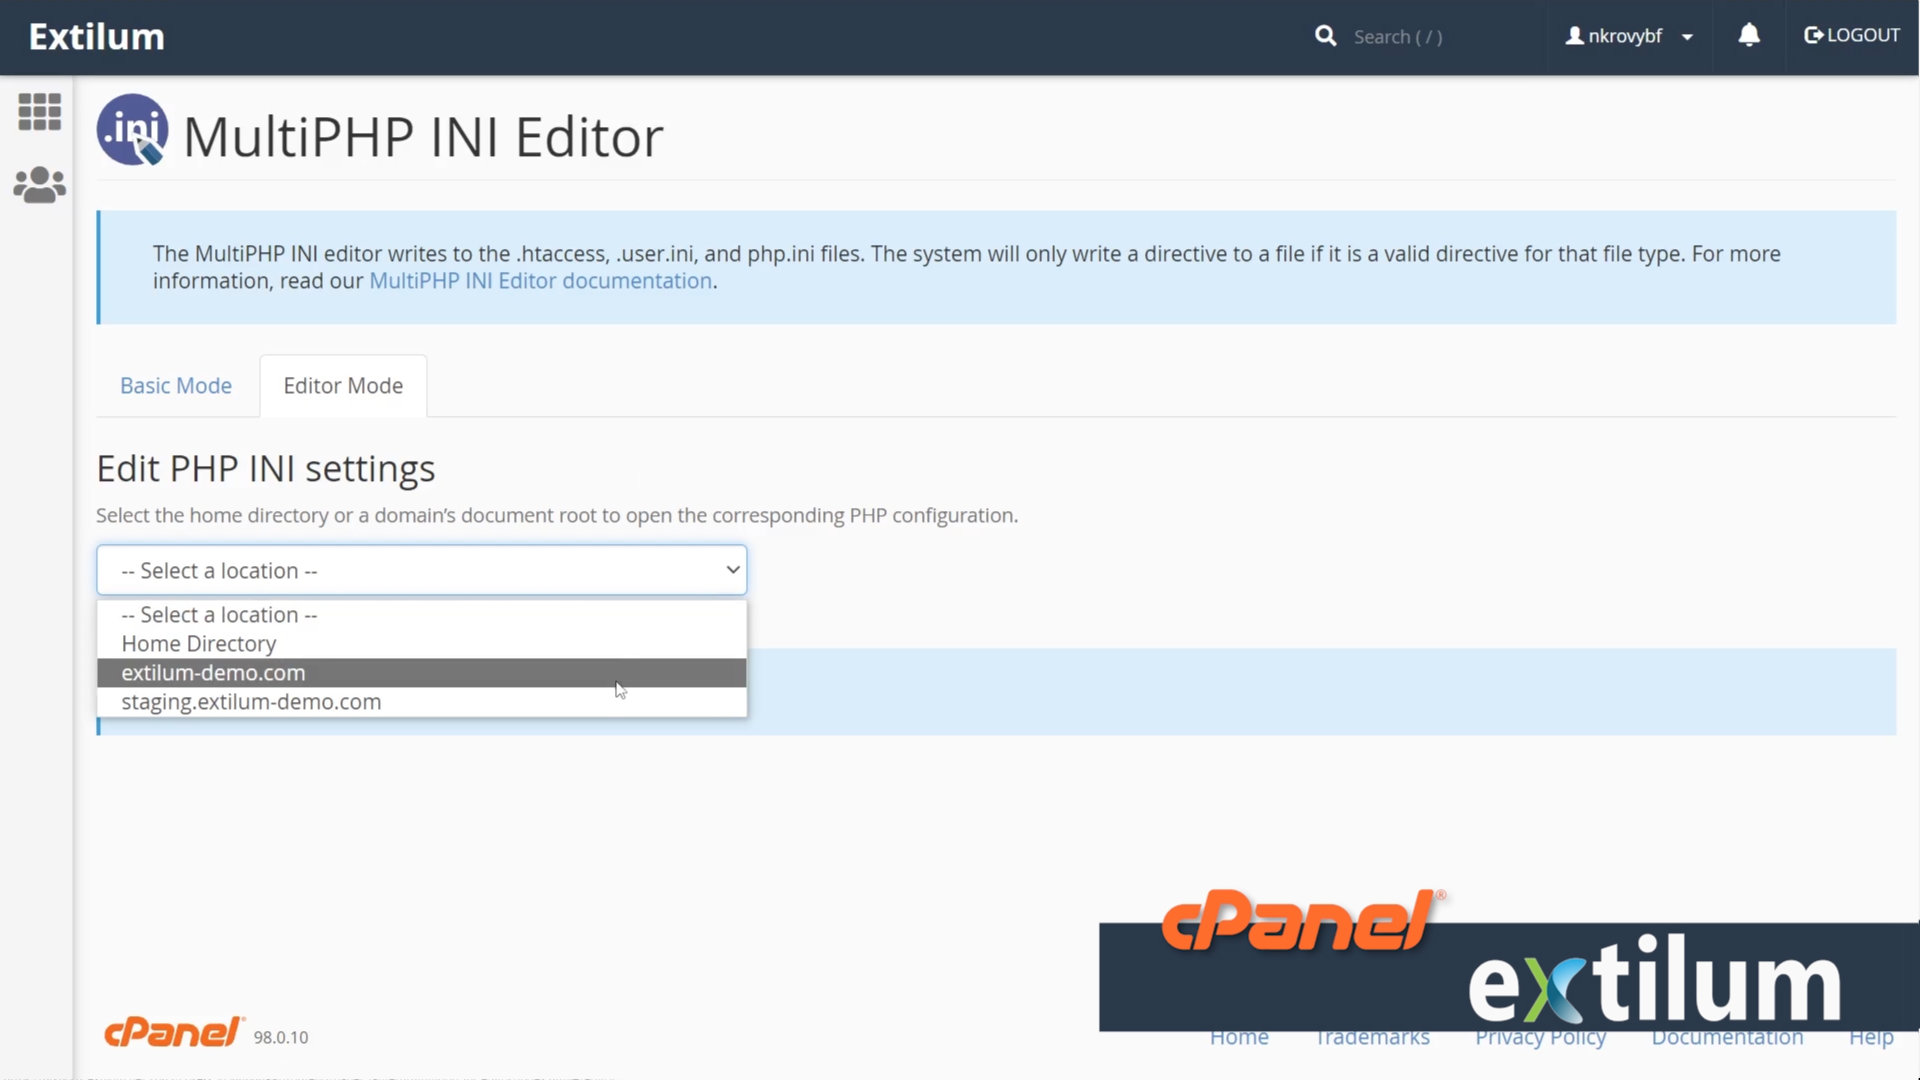 Extilum cPanel - MultiPHP INI Editor